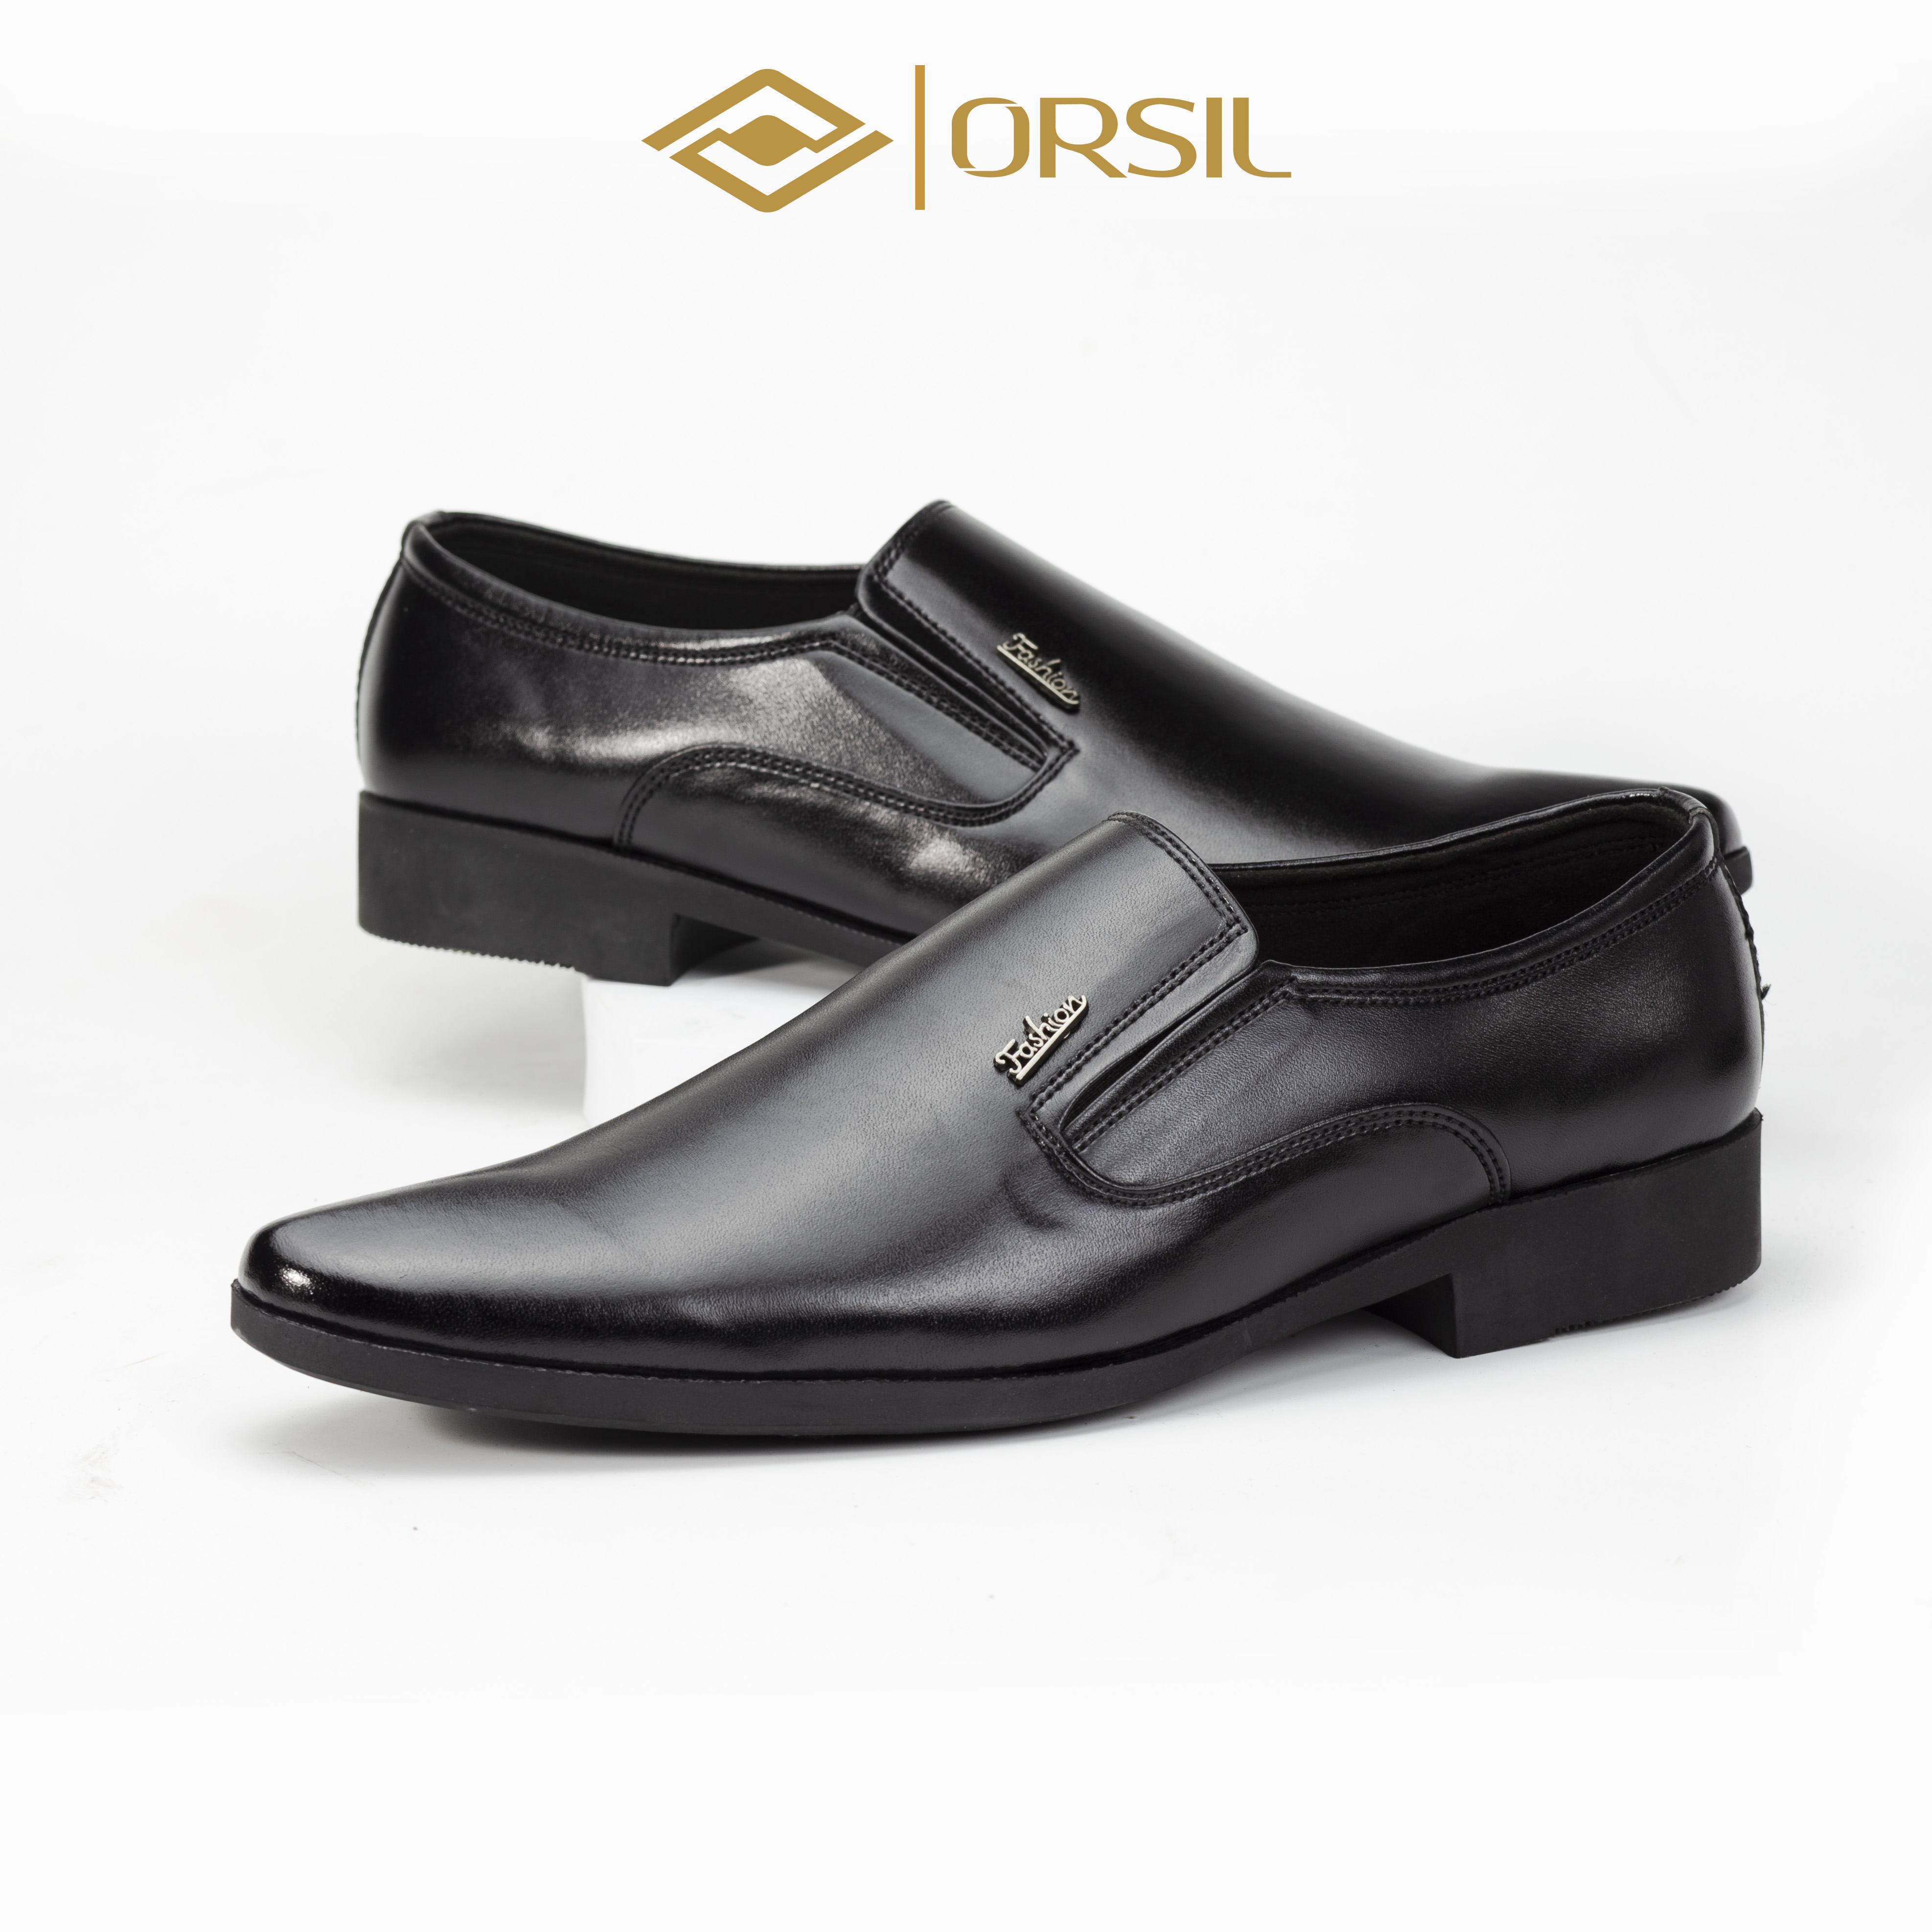 Giày da nam công sở cao cấp ORSIL mã CS-H hai màu đen và nâu